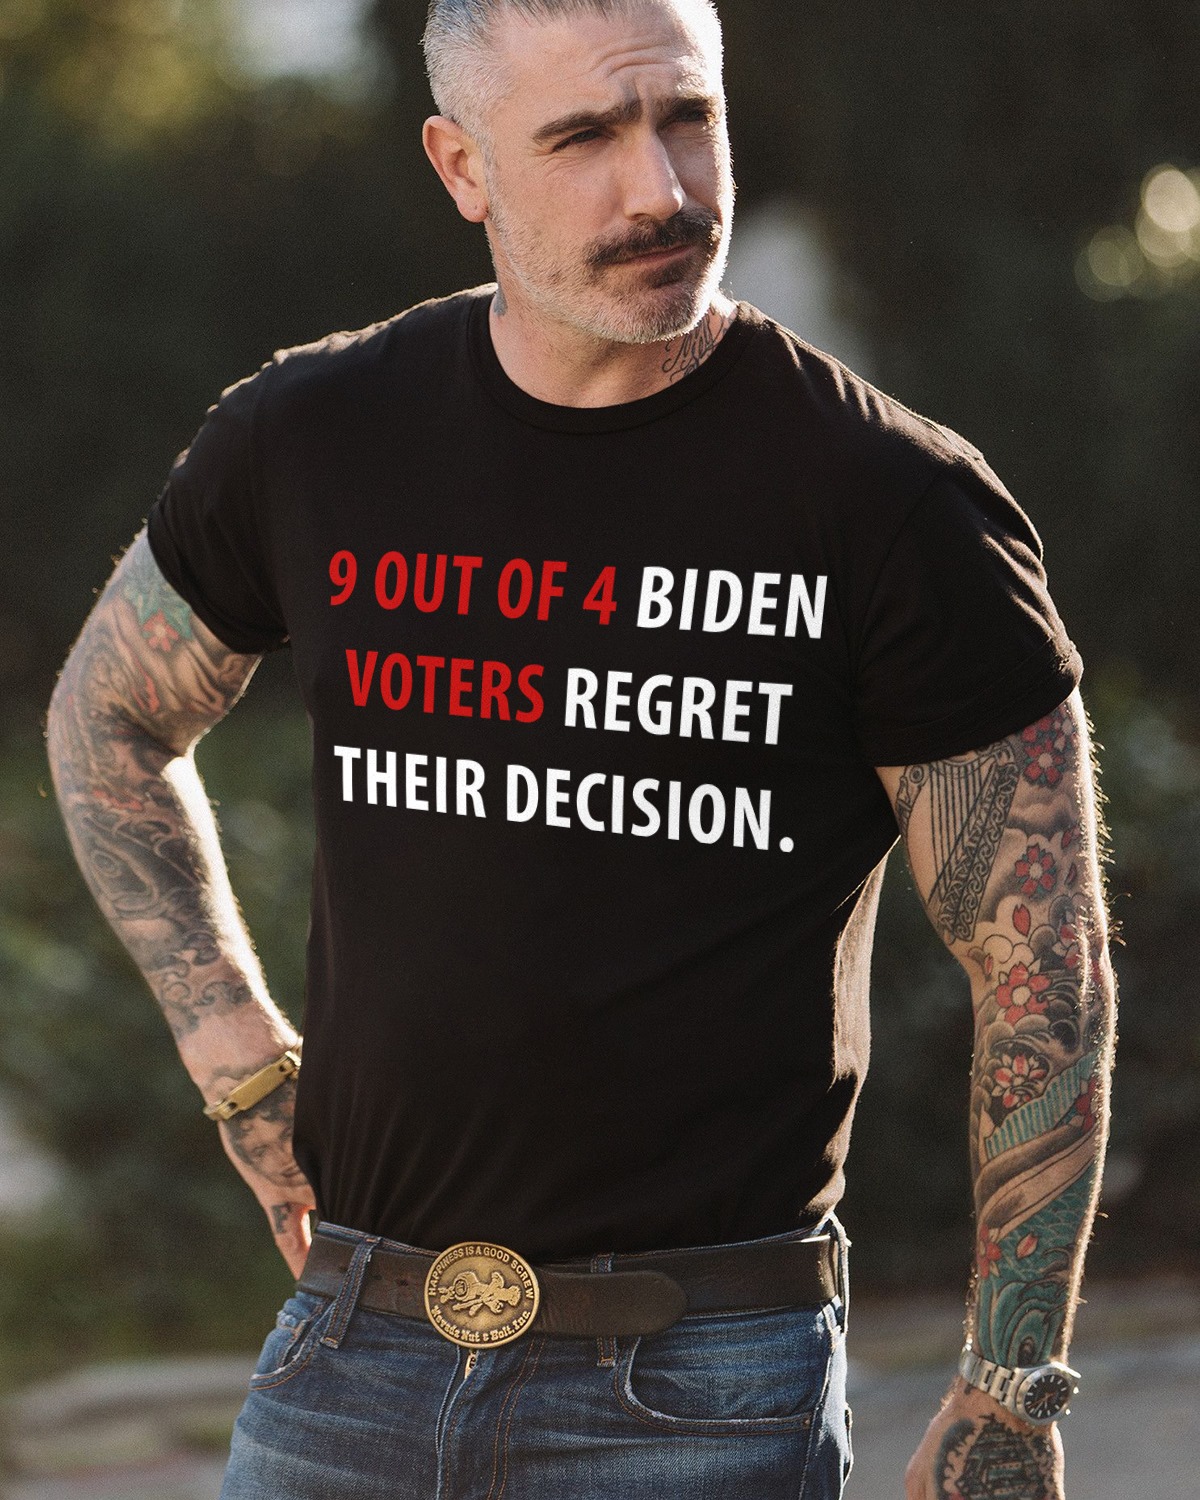 President Biden – 9 out of 4 Biden voters regret their decision